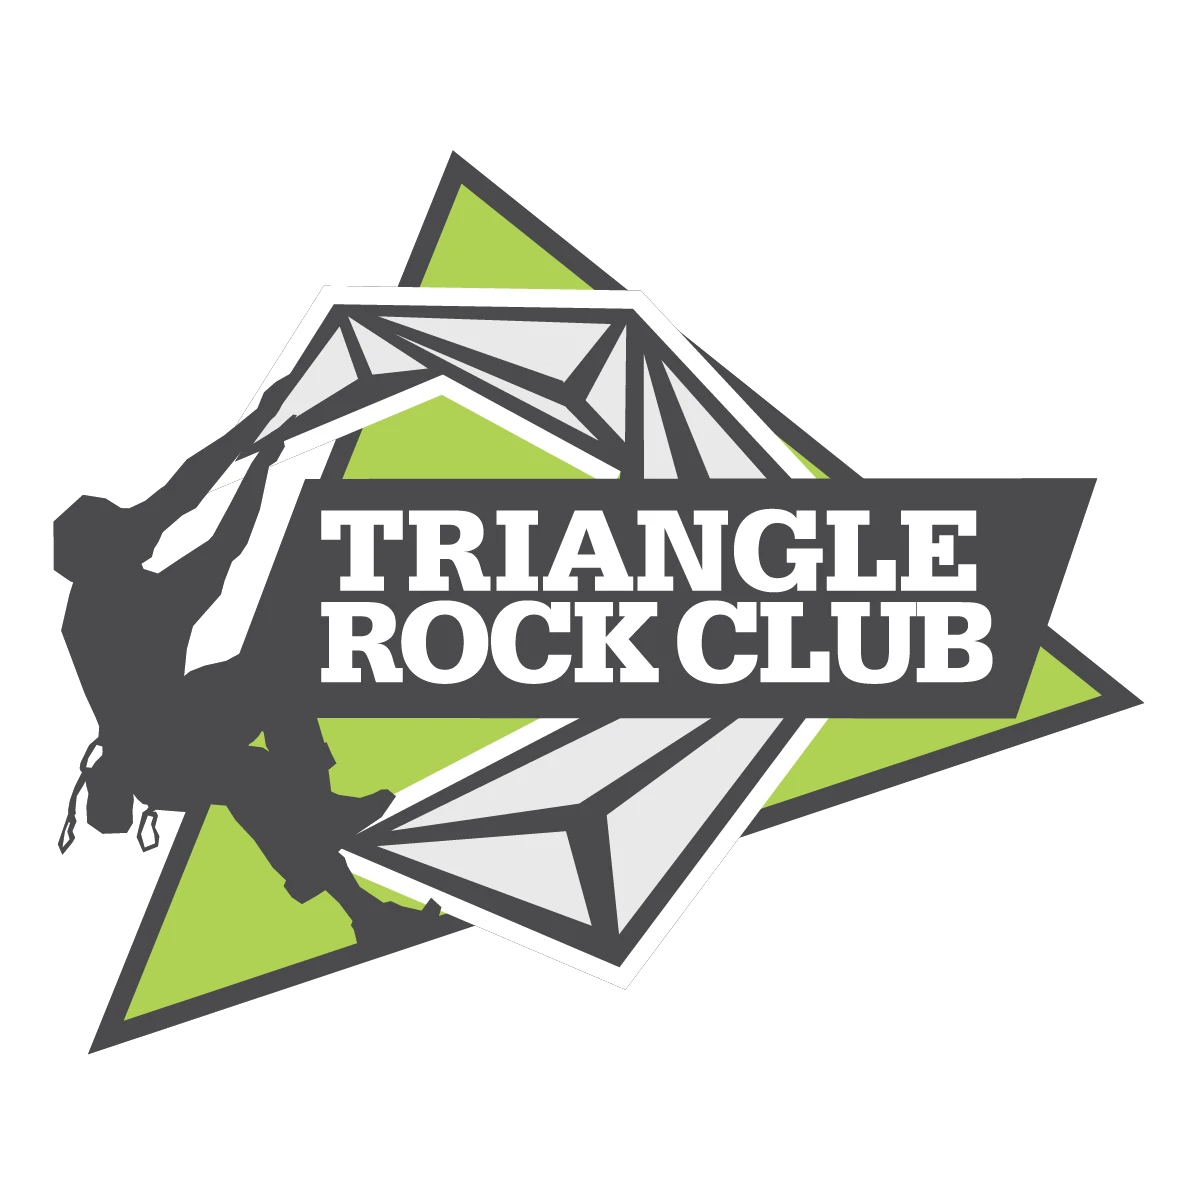 trianglerockclub.com